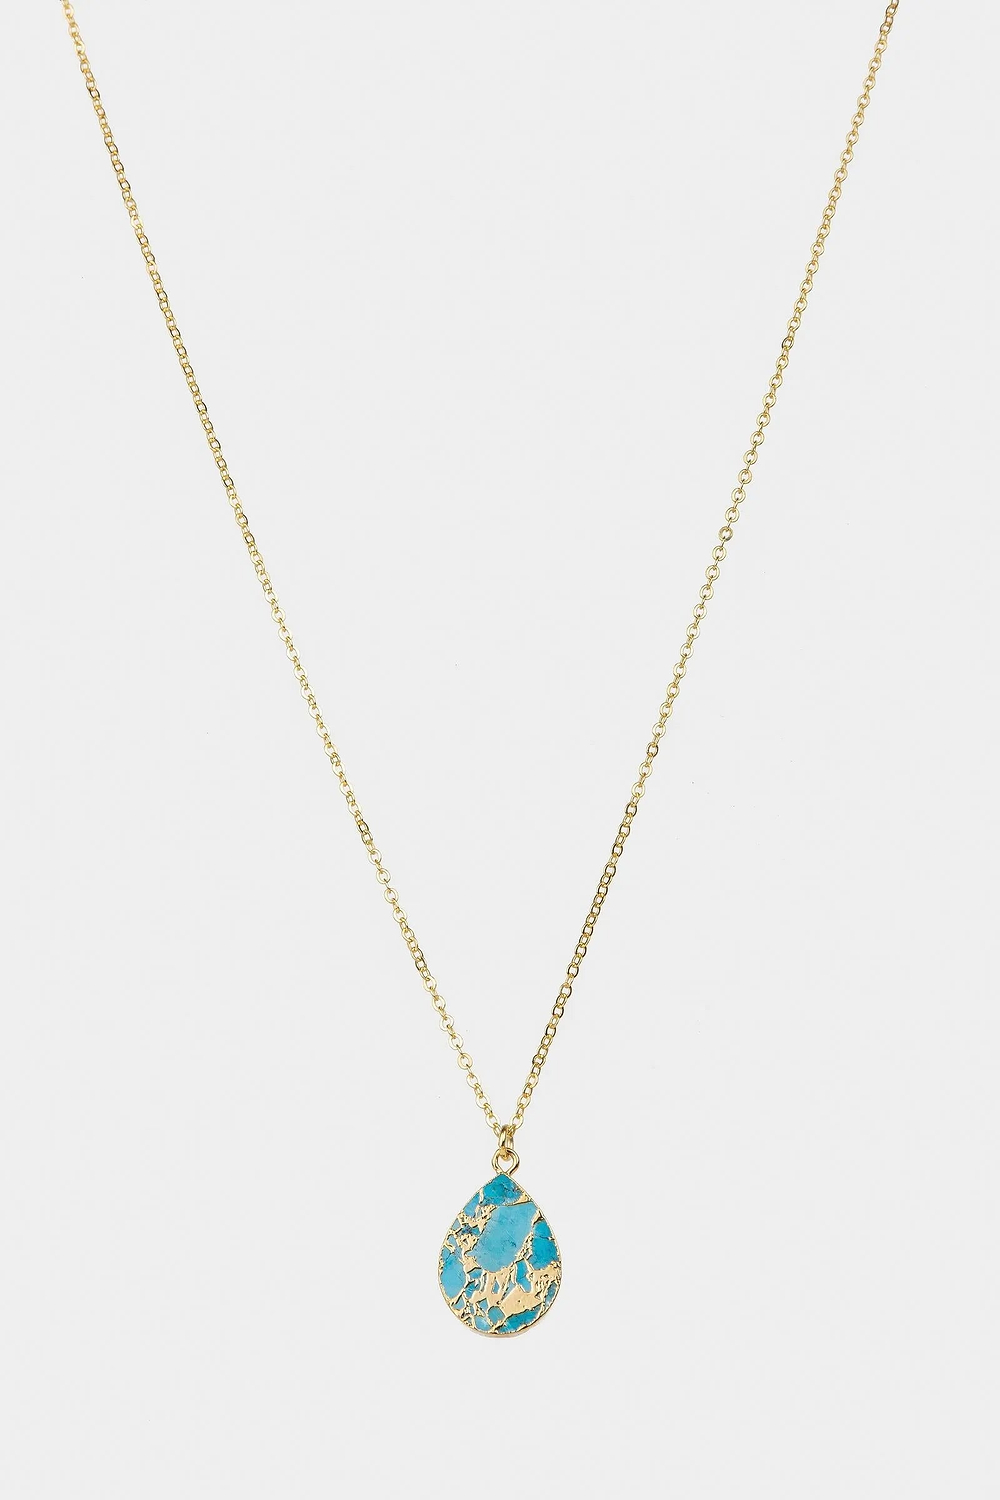 Mojave Pear Shape Mixed Gemstone Pendant Necklace Turquoise